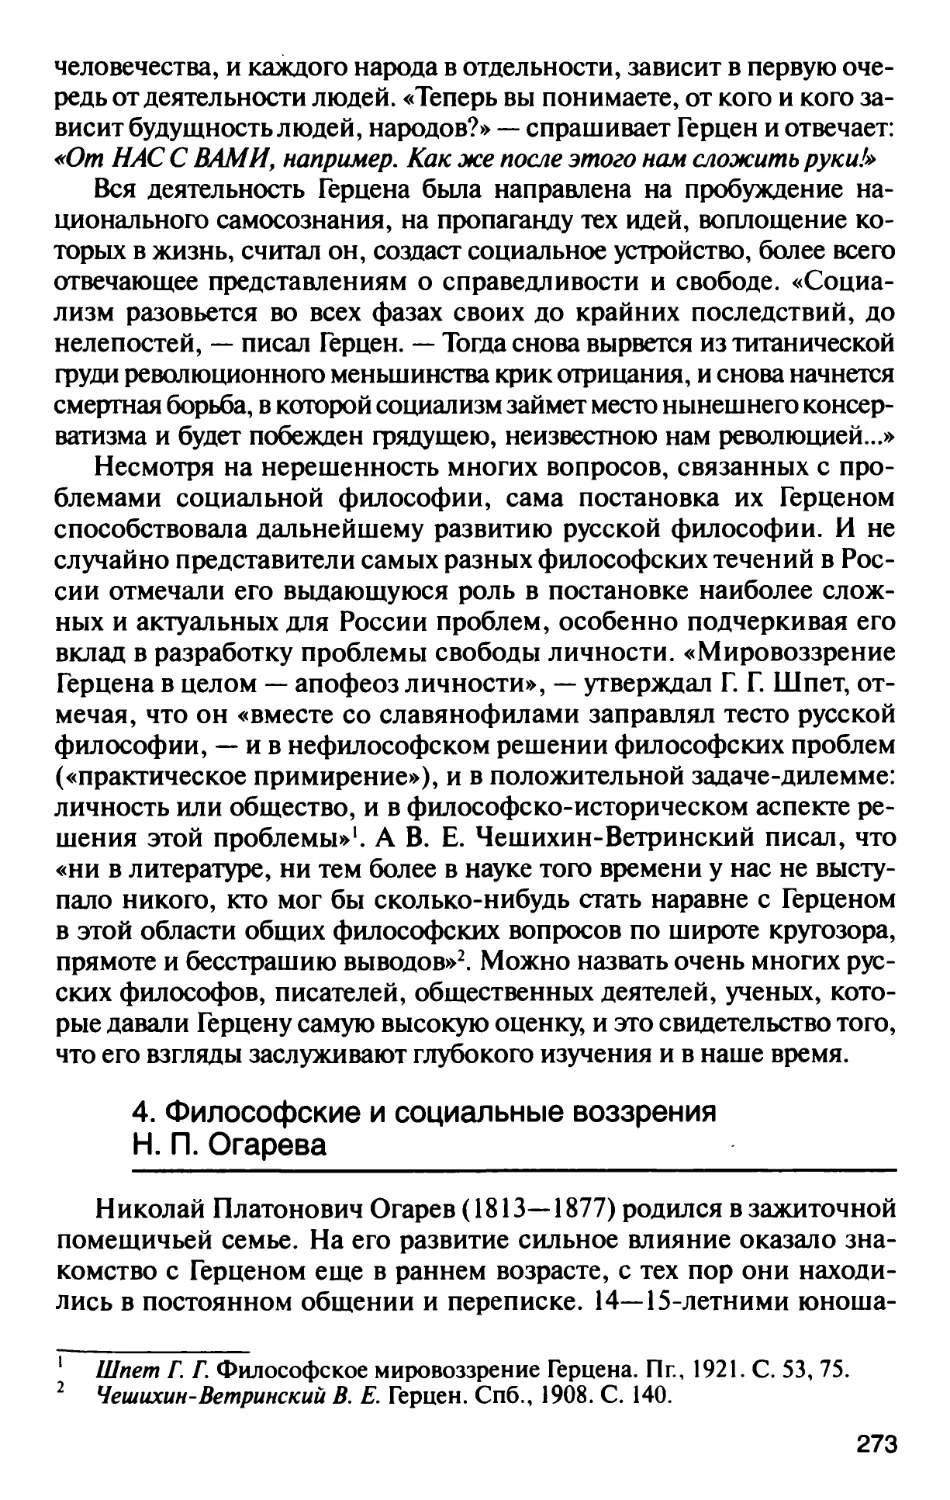 4. Философские и социальные воззрения Н.П. Огарева